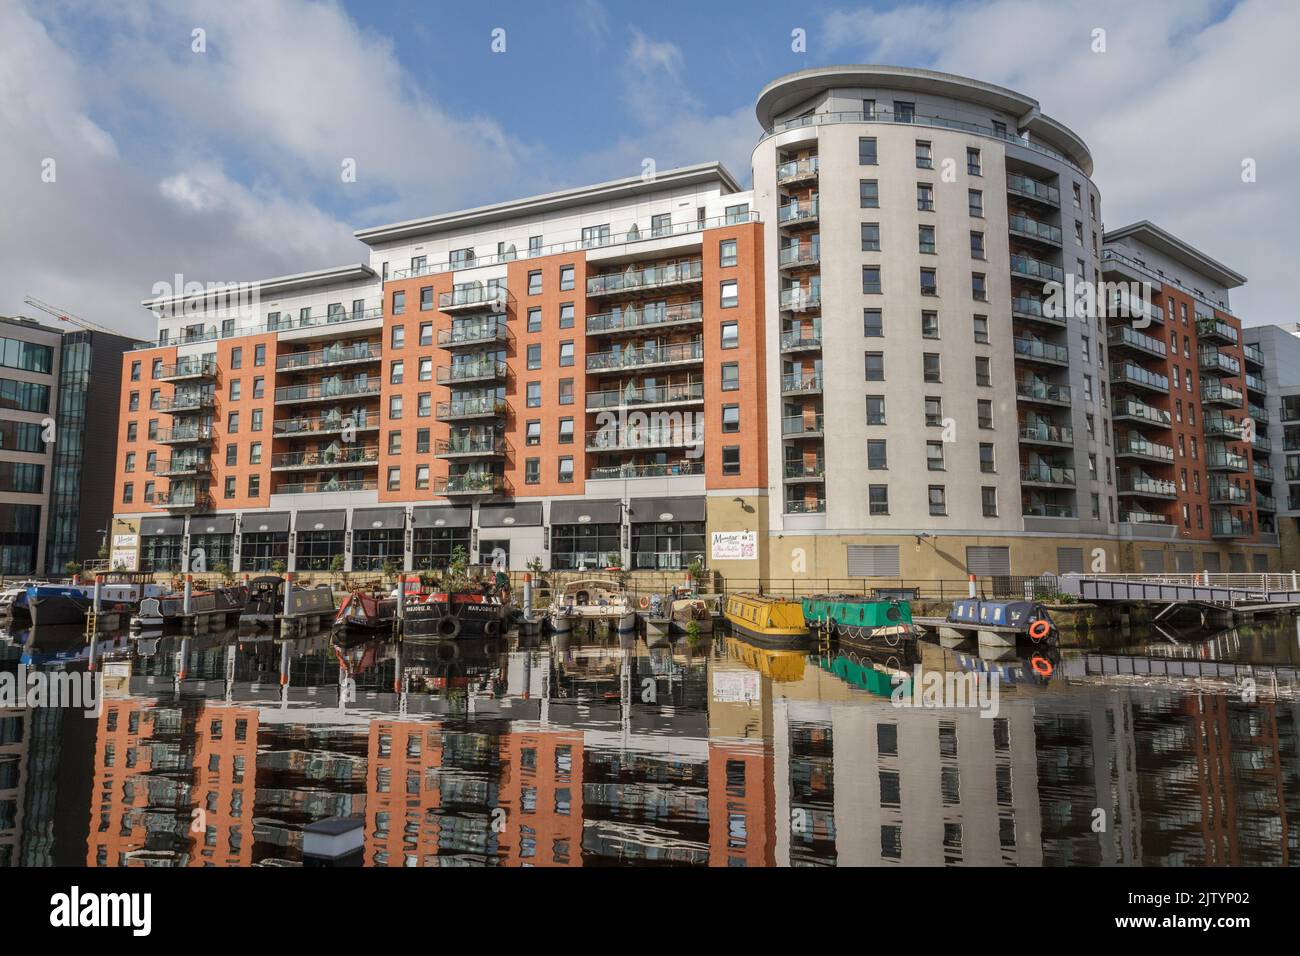 Vista generale di MacKenzie House, Leeds Dock, uno sviluppo misto con negozi, uffici e strutture per il tempo libero sul fiume Aire, Leeds, West Yorkshire, Regno Unito. Foto Stock